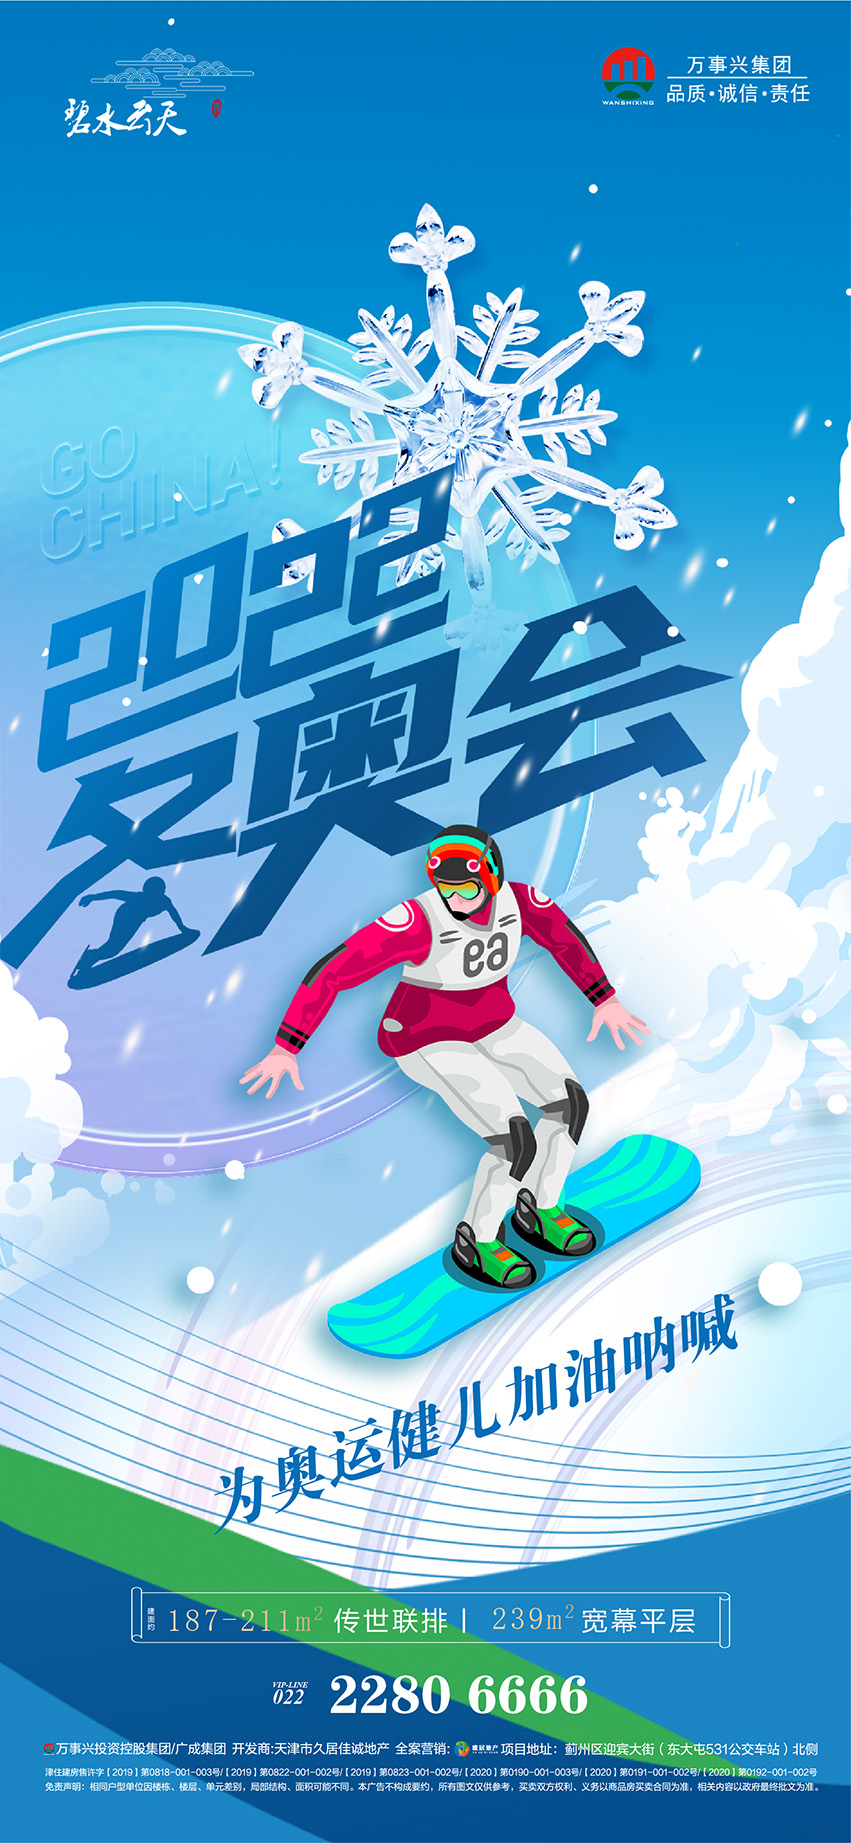 北京冬奥会助威加油系列海报-01.jpg